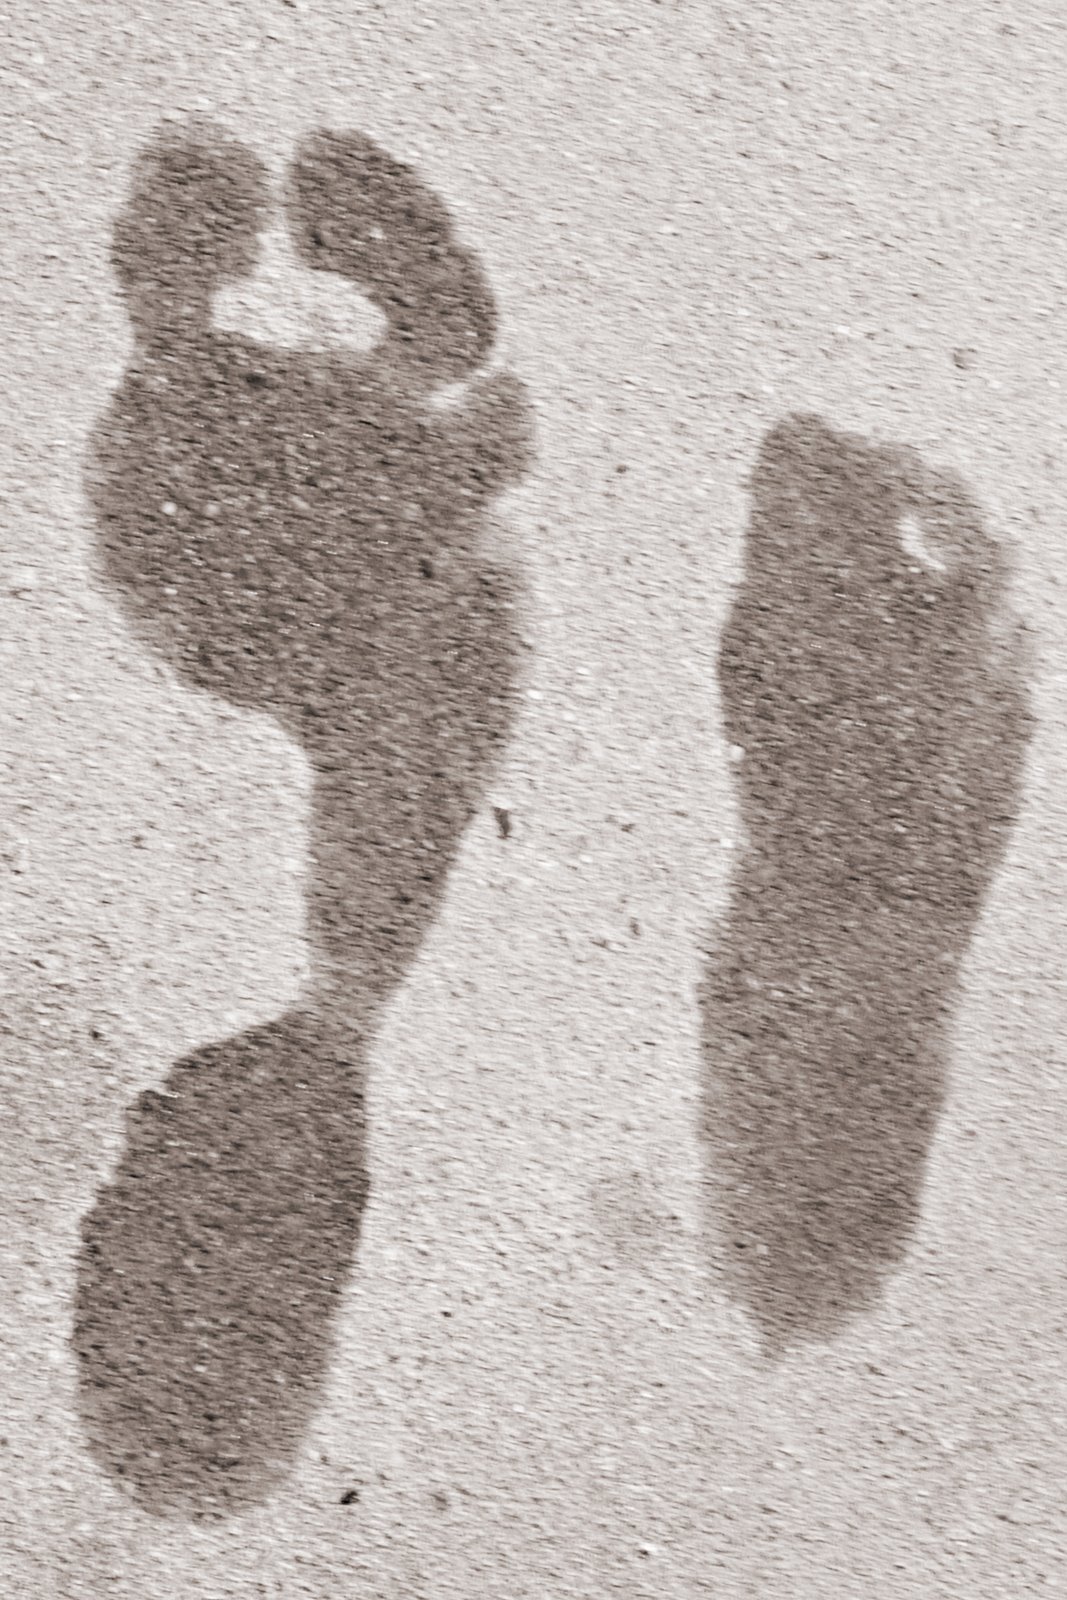 [Footprints.jpg]